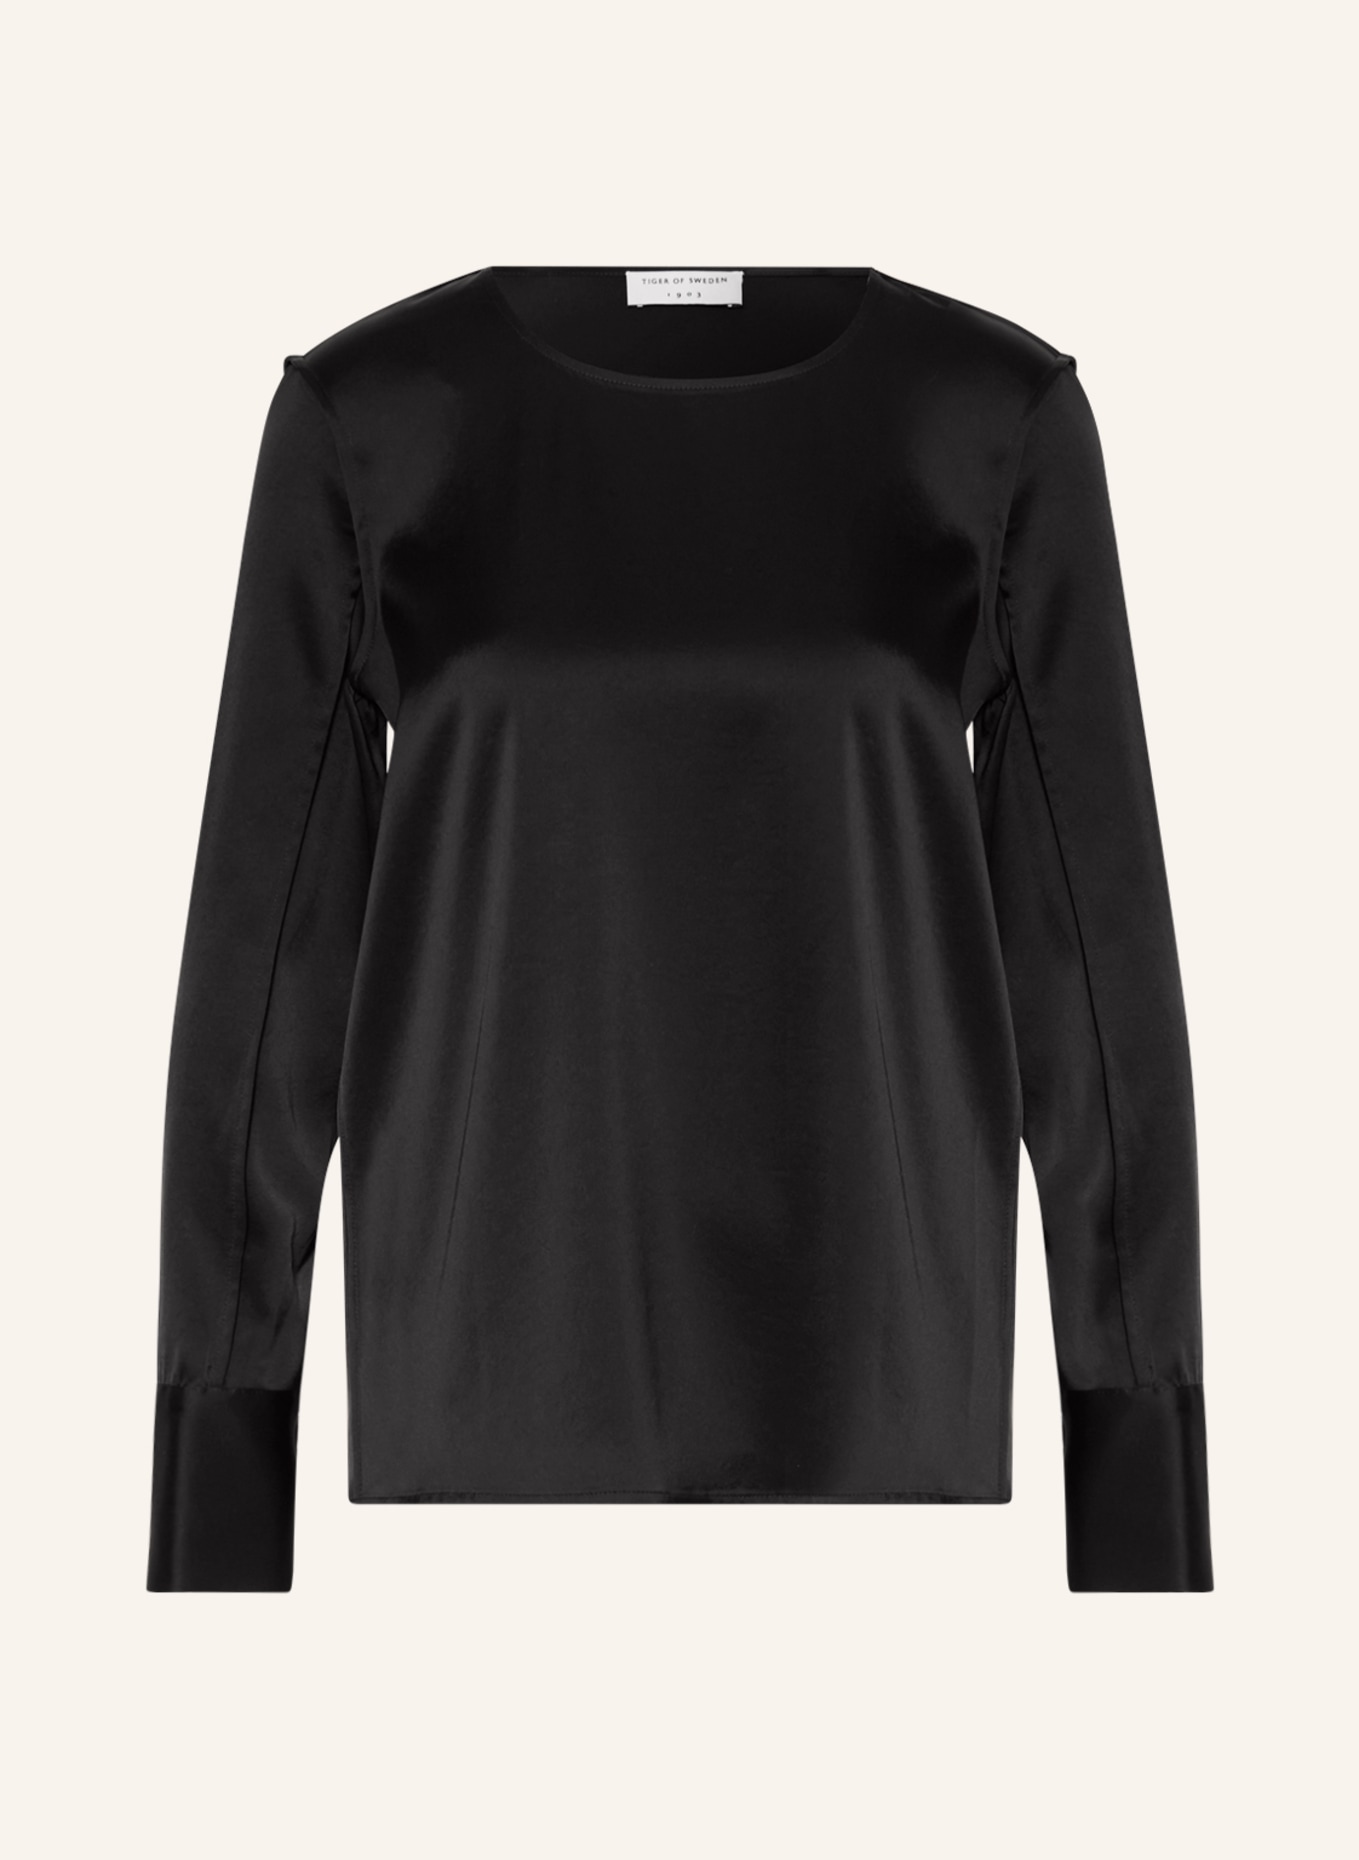 TIGER OF SWEDEN Shirt blouse HELKA made of satin, Color: BLACK (Image 1)